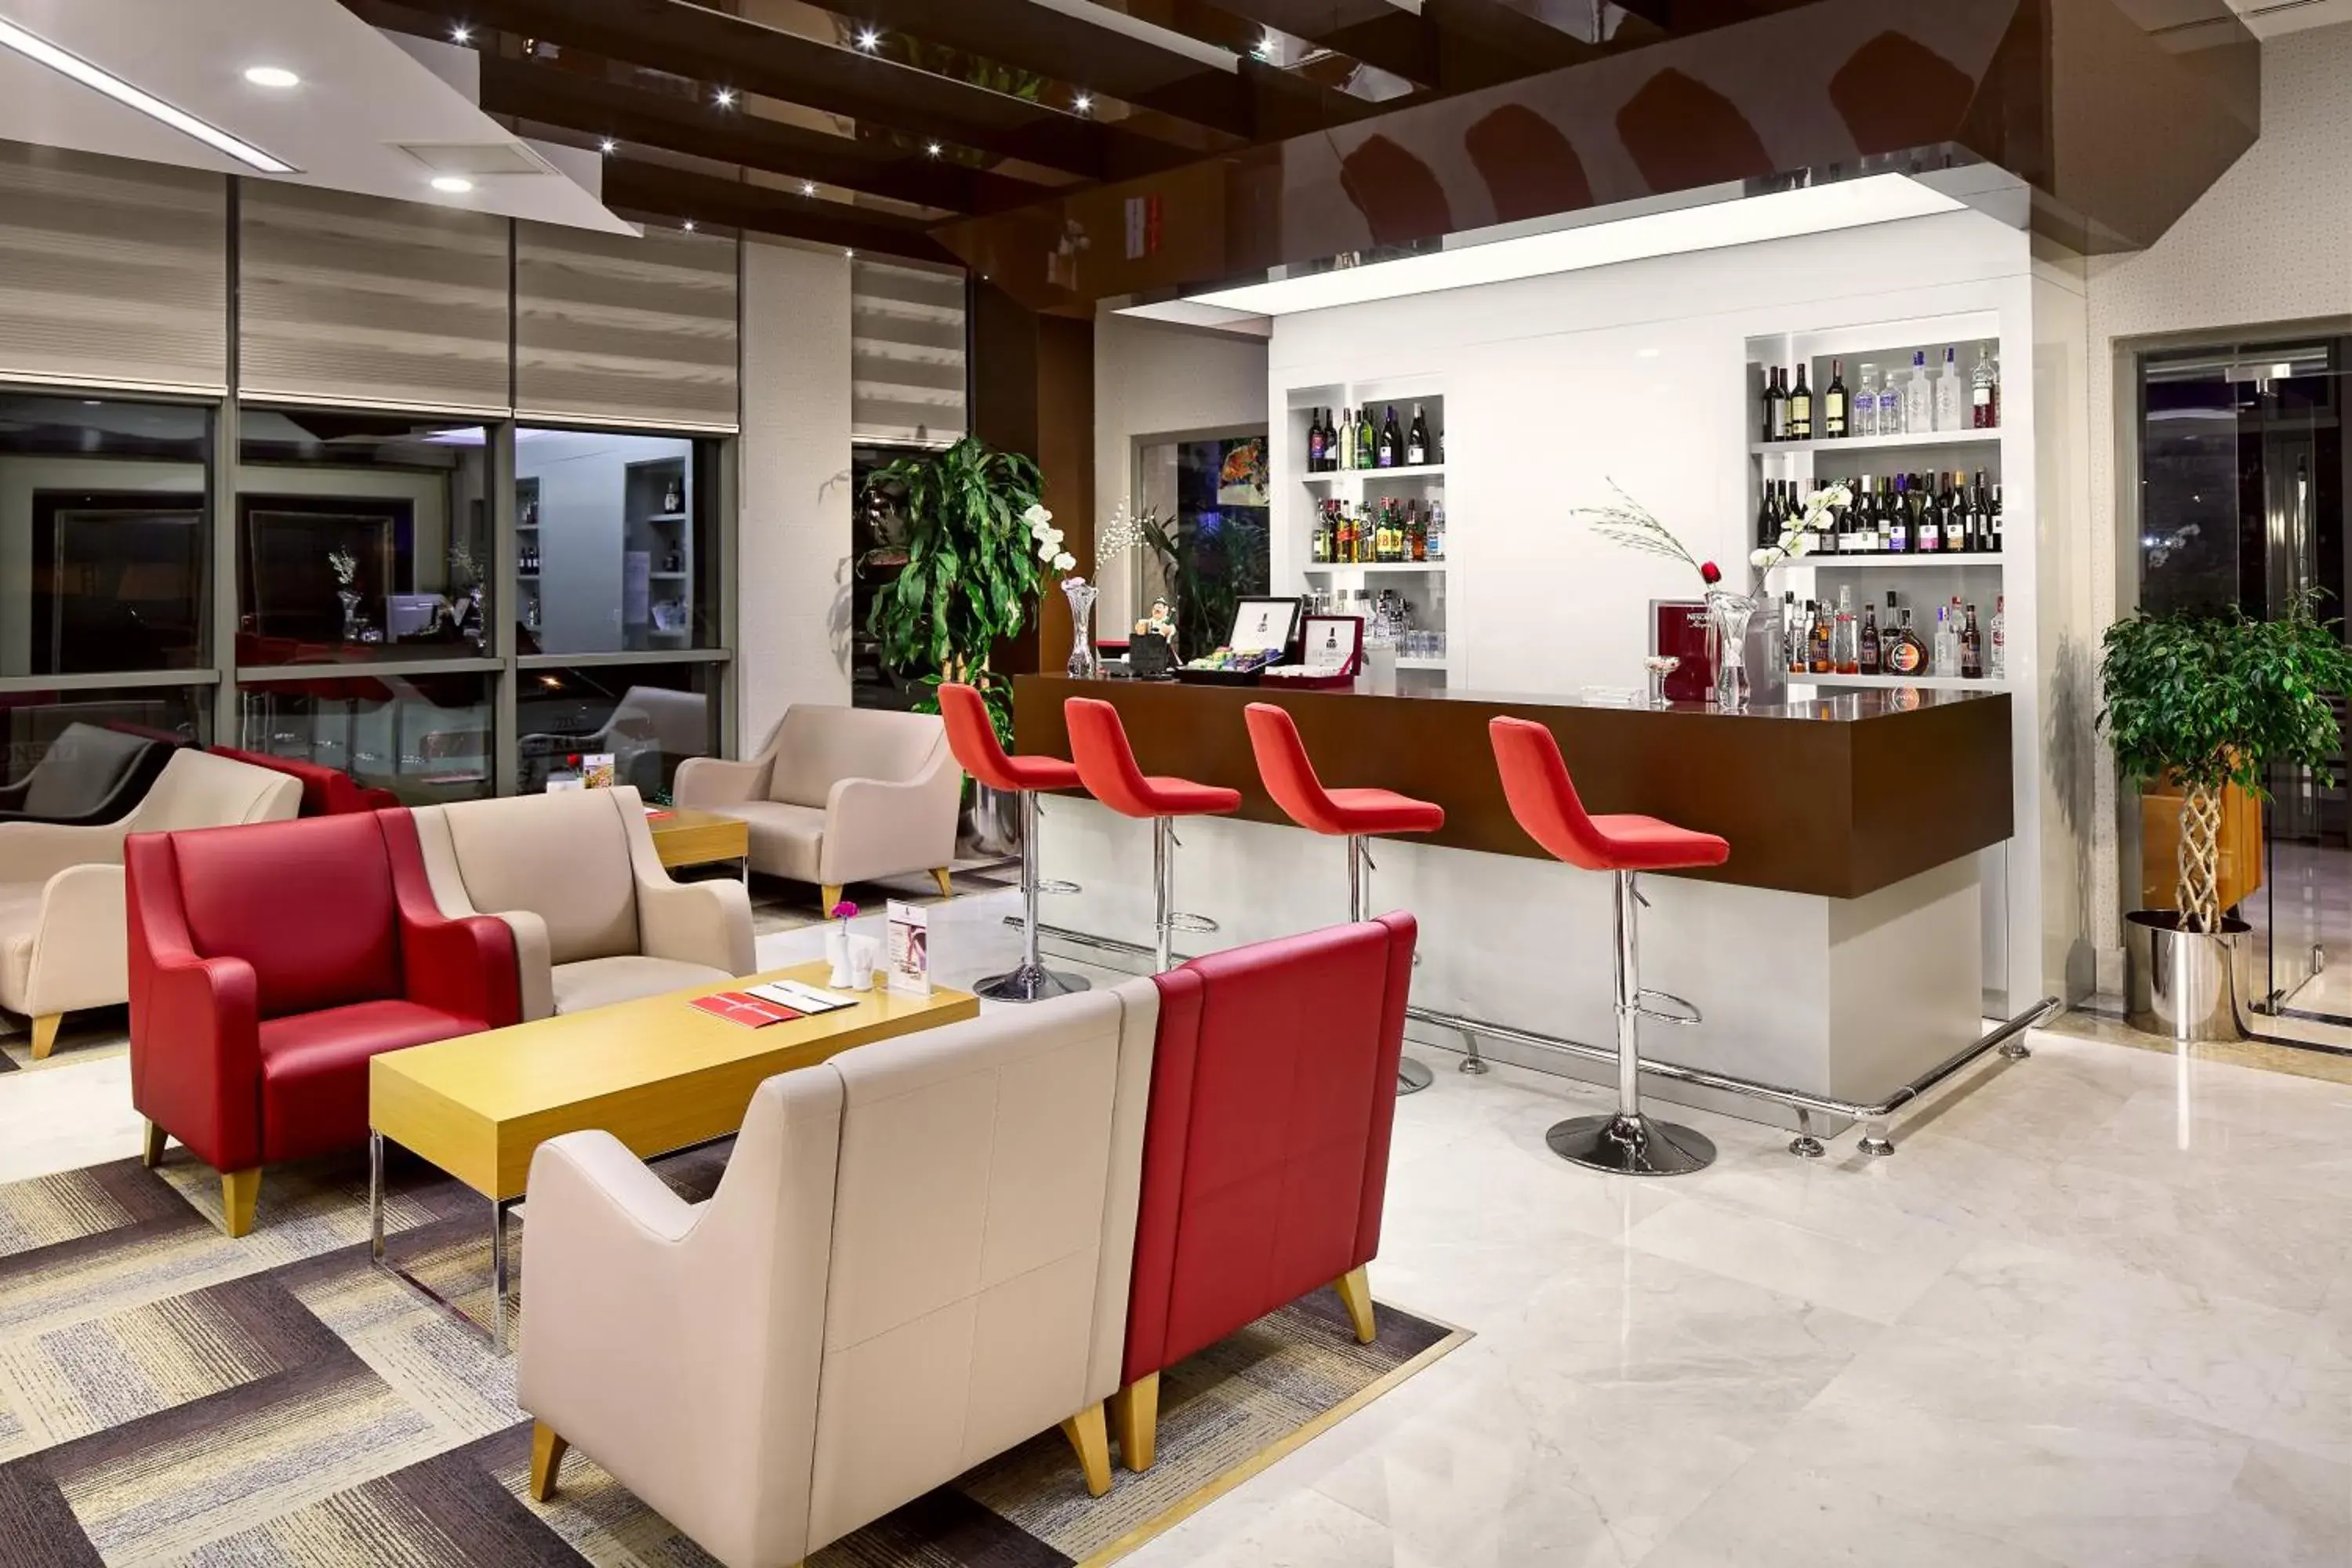 Lobby or reception, Lobby/Reception in The Merlot Hotel Eskisehir